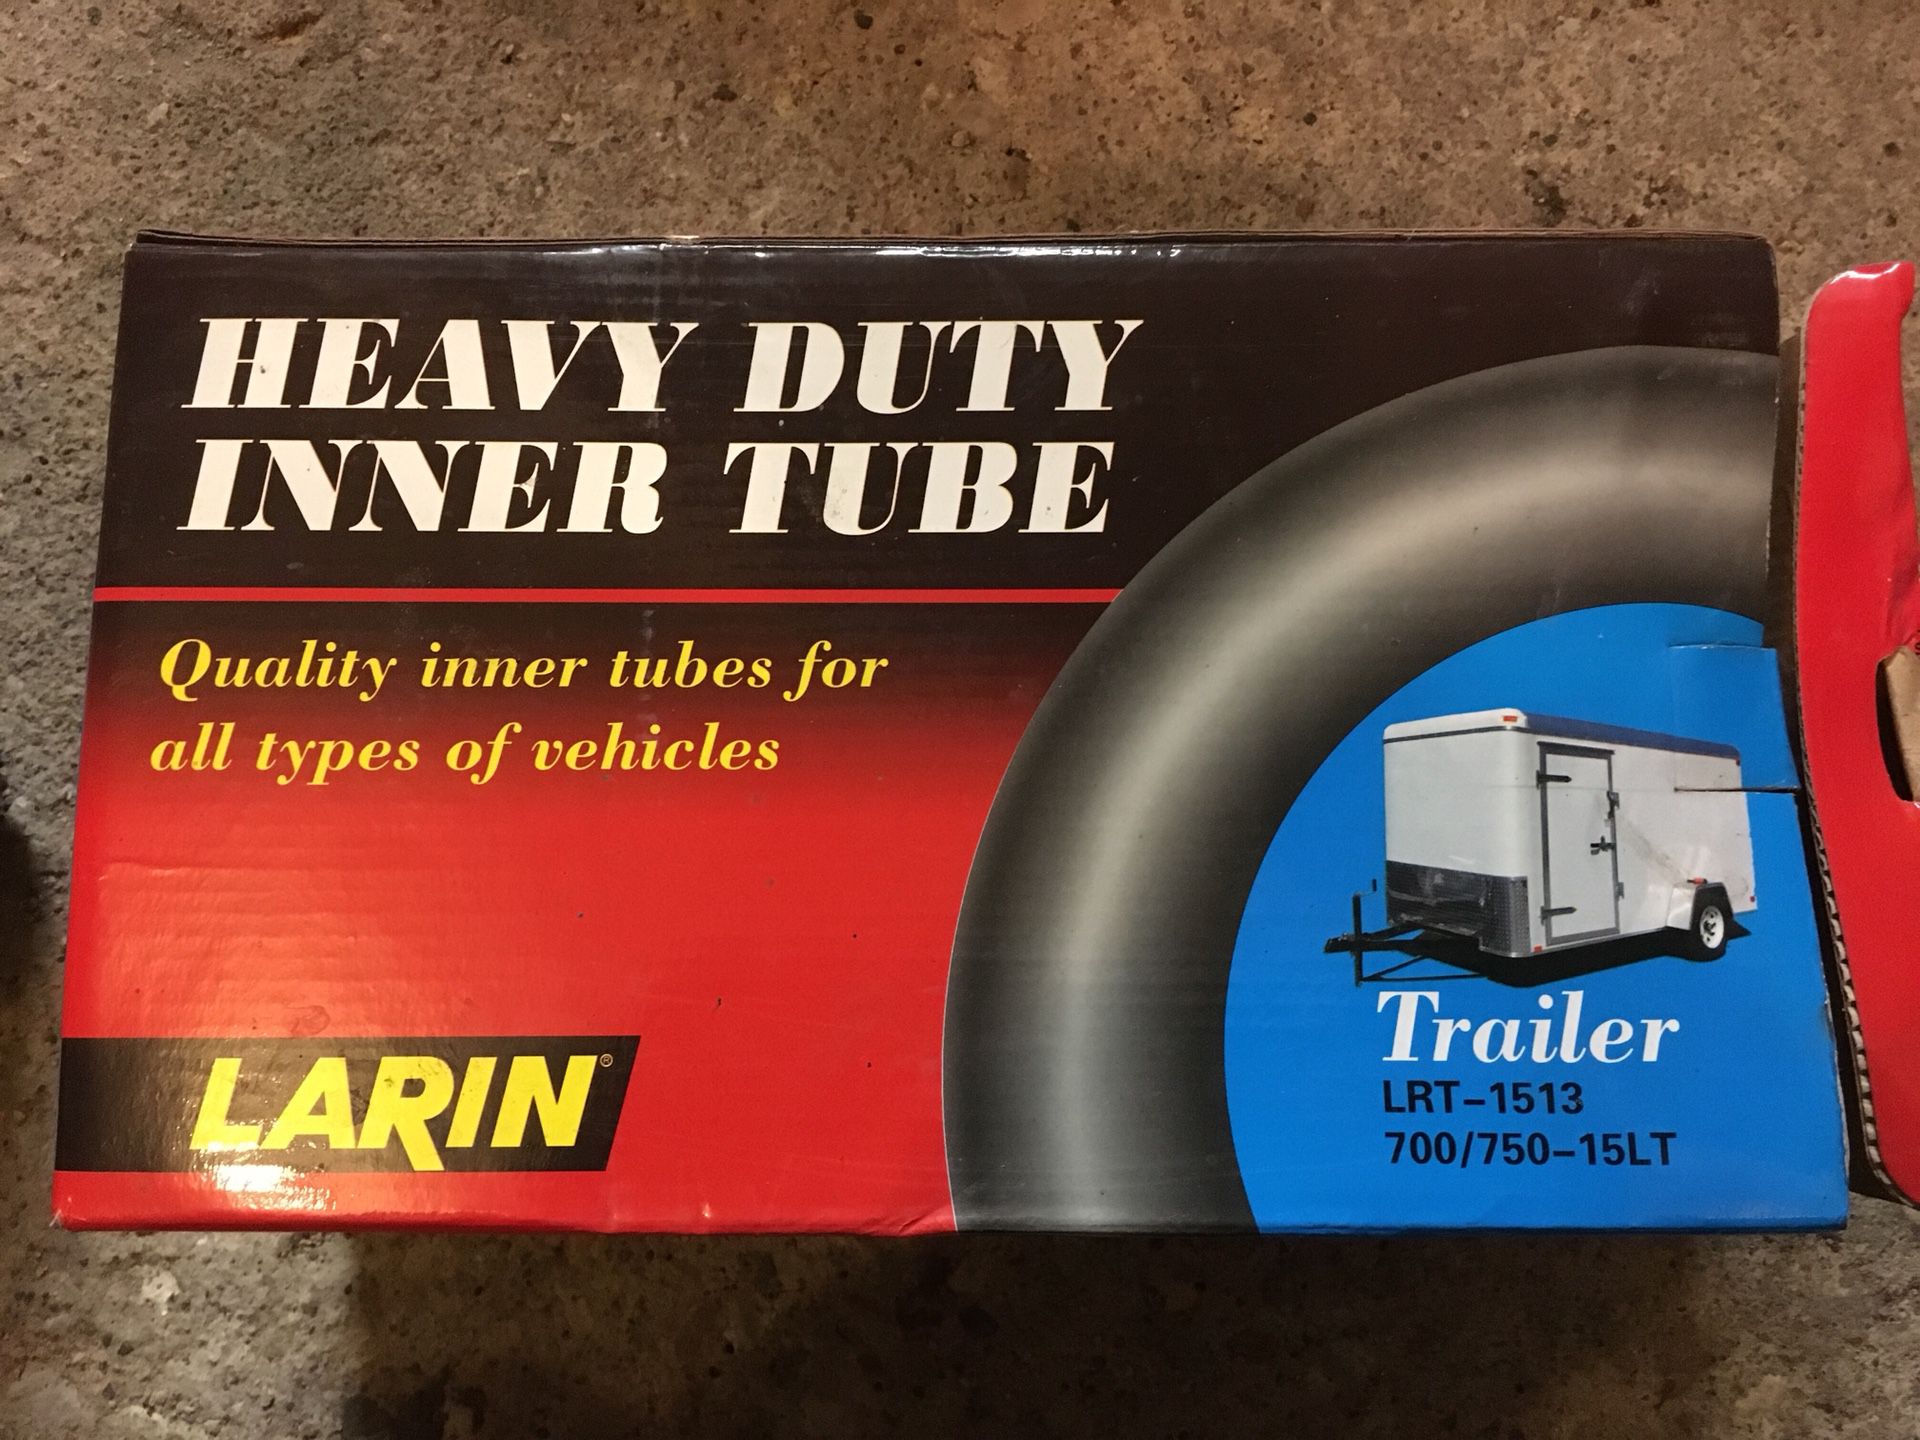 Trailer tire innertube